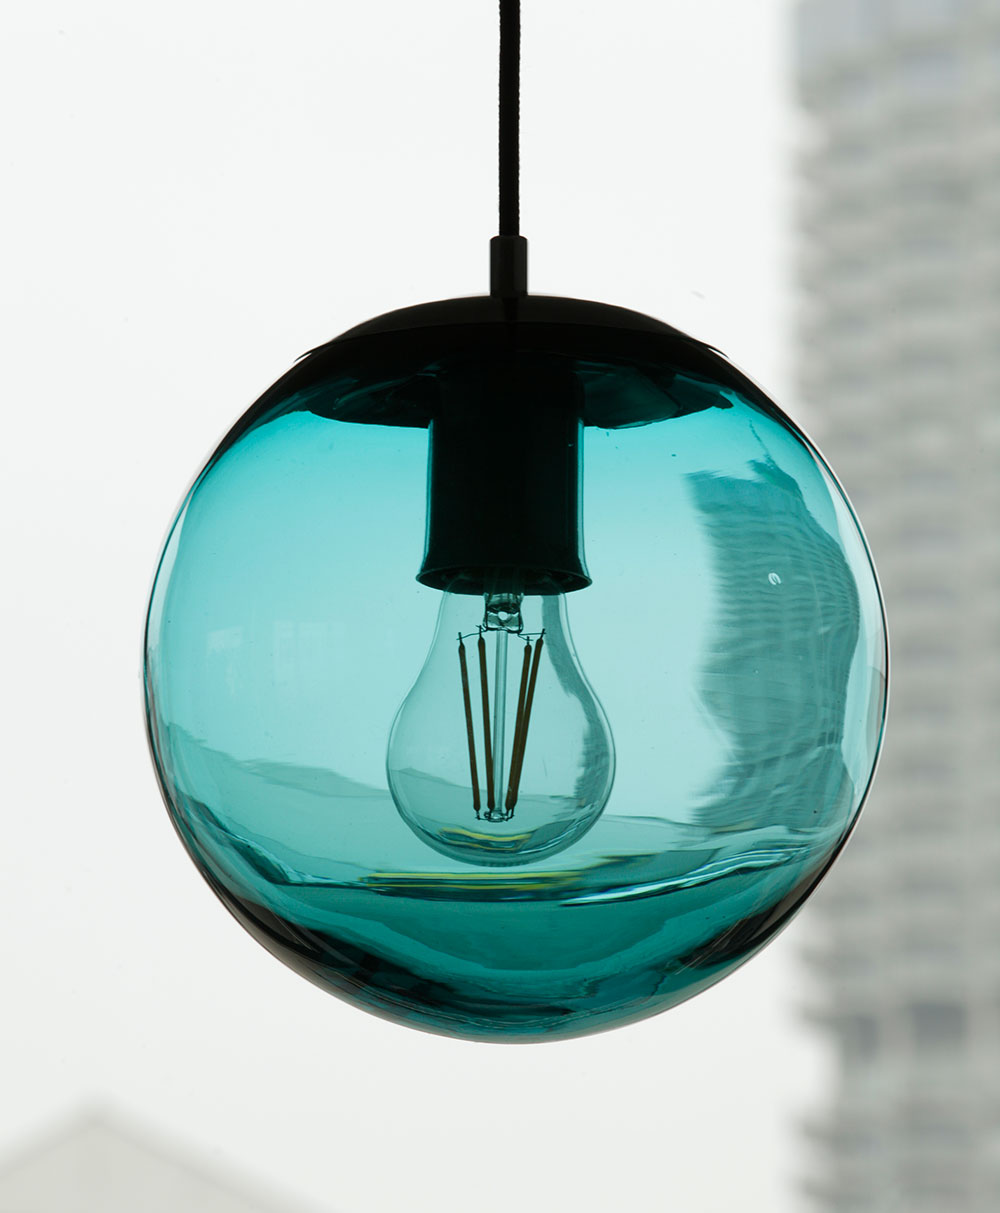 Bunt gefärbte Glaskugel-Leuchte, div. Glas-Farben, Ø 22 cm: Türkis-blau gefärbte Glas-Kugel-Hängeleuchte